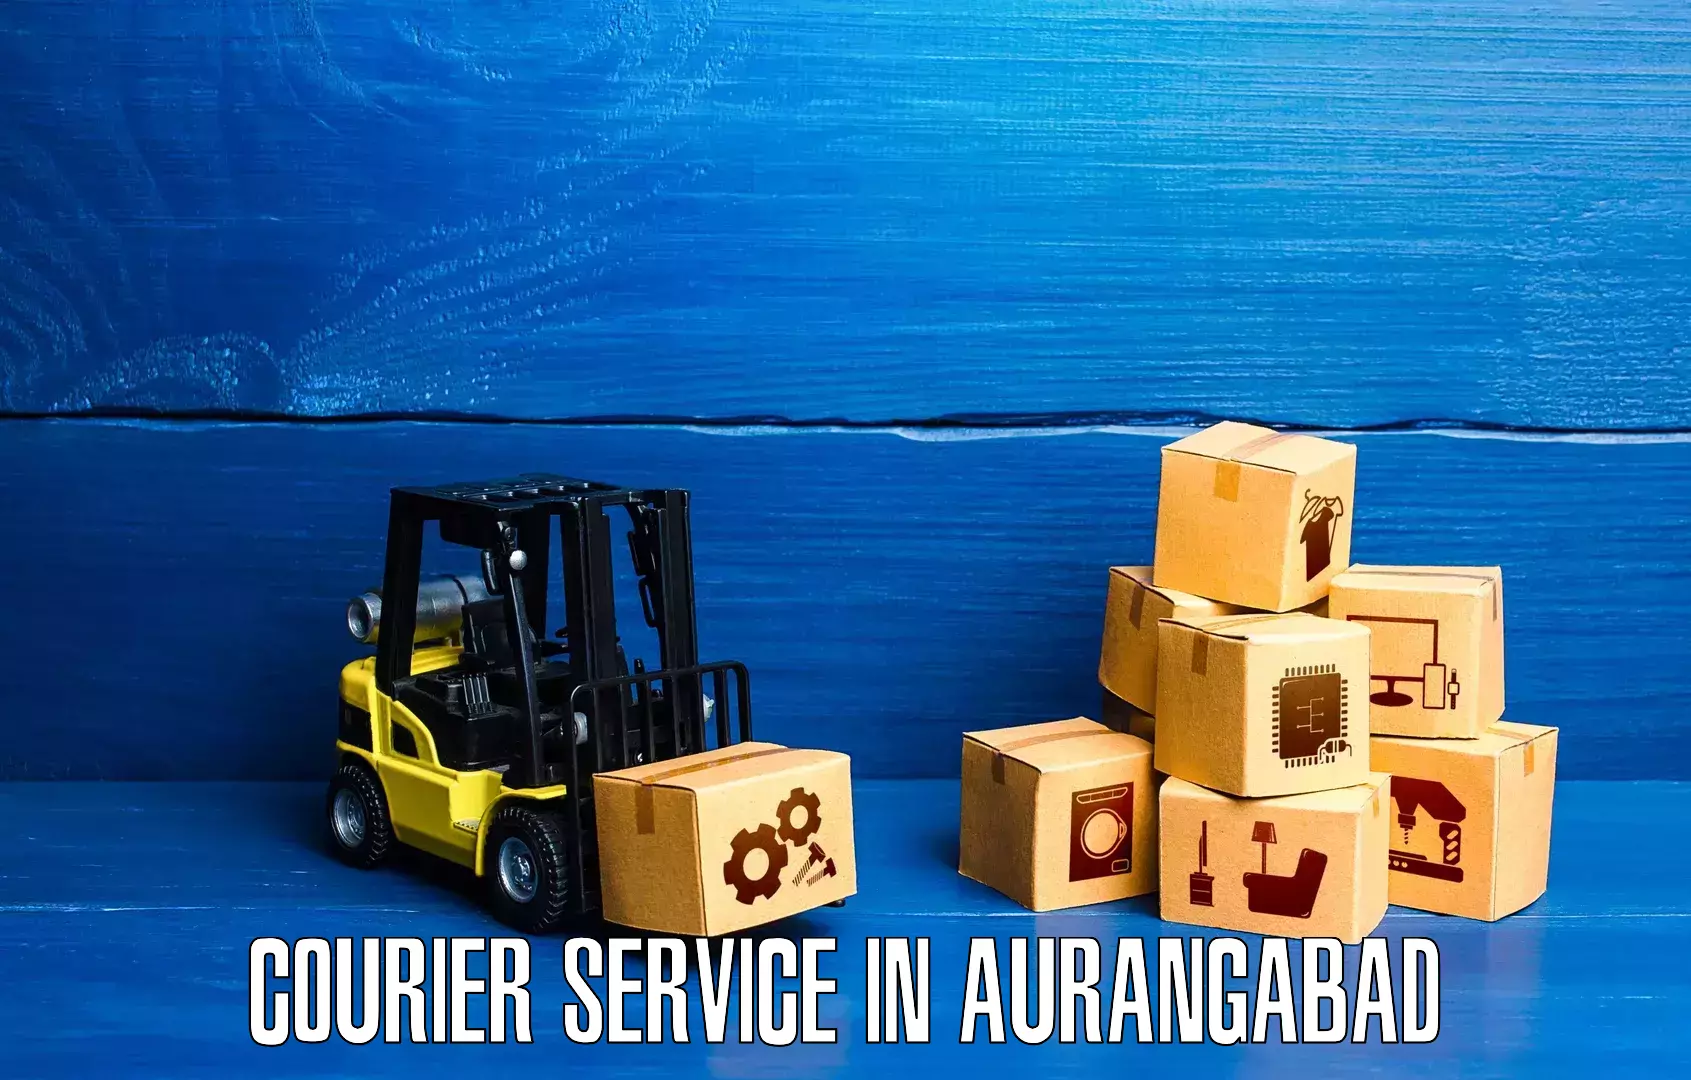 Affordable logistics services in Aurangabad